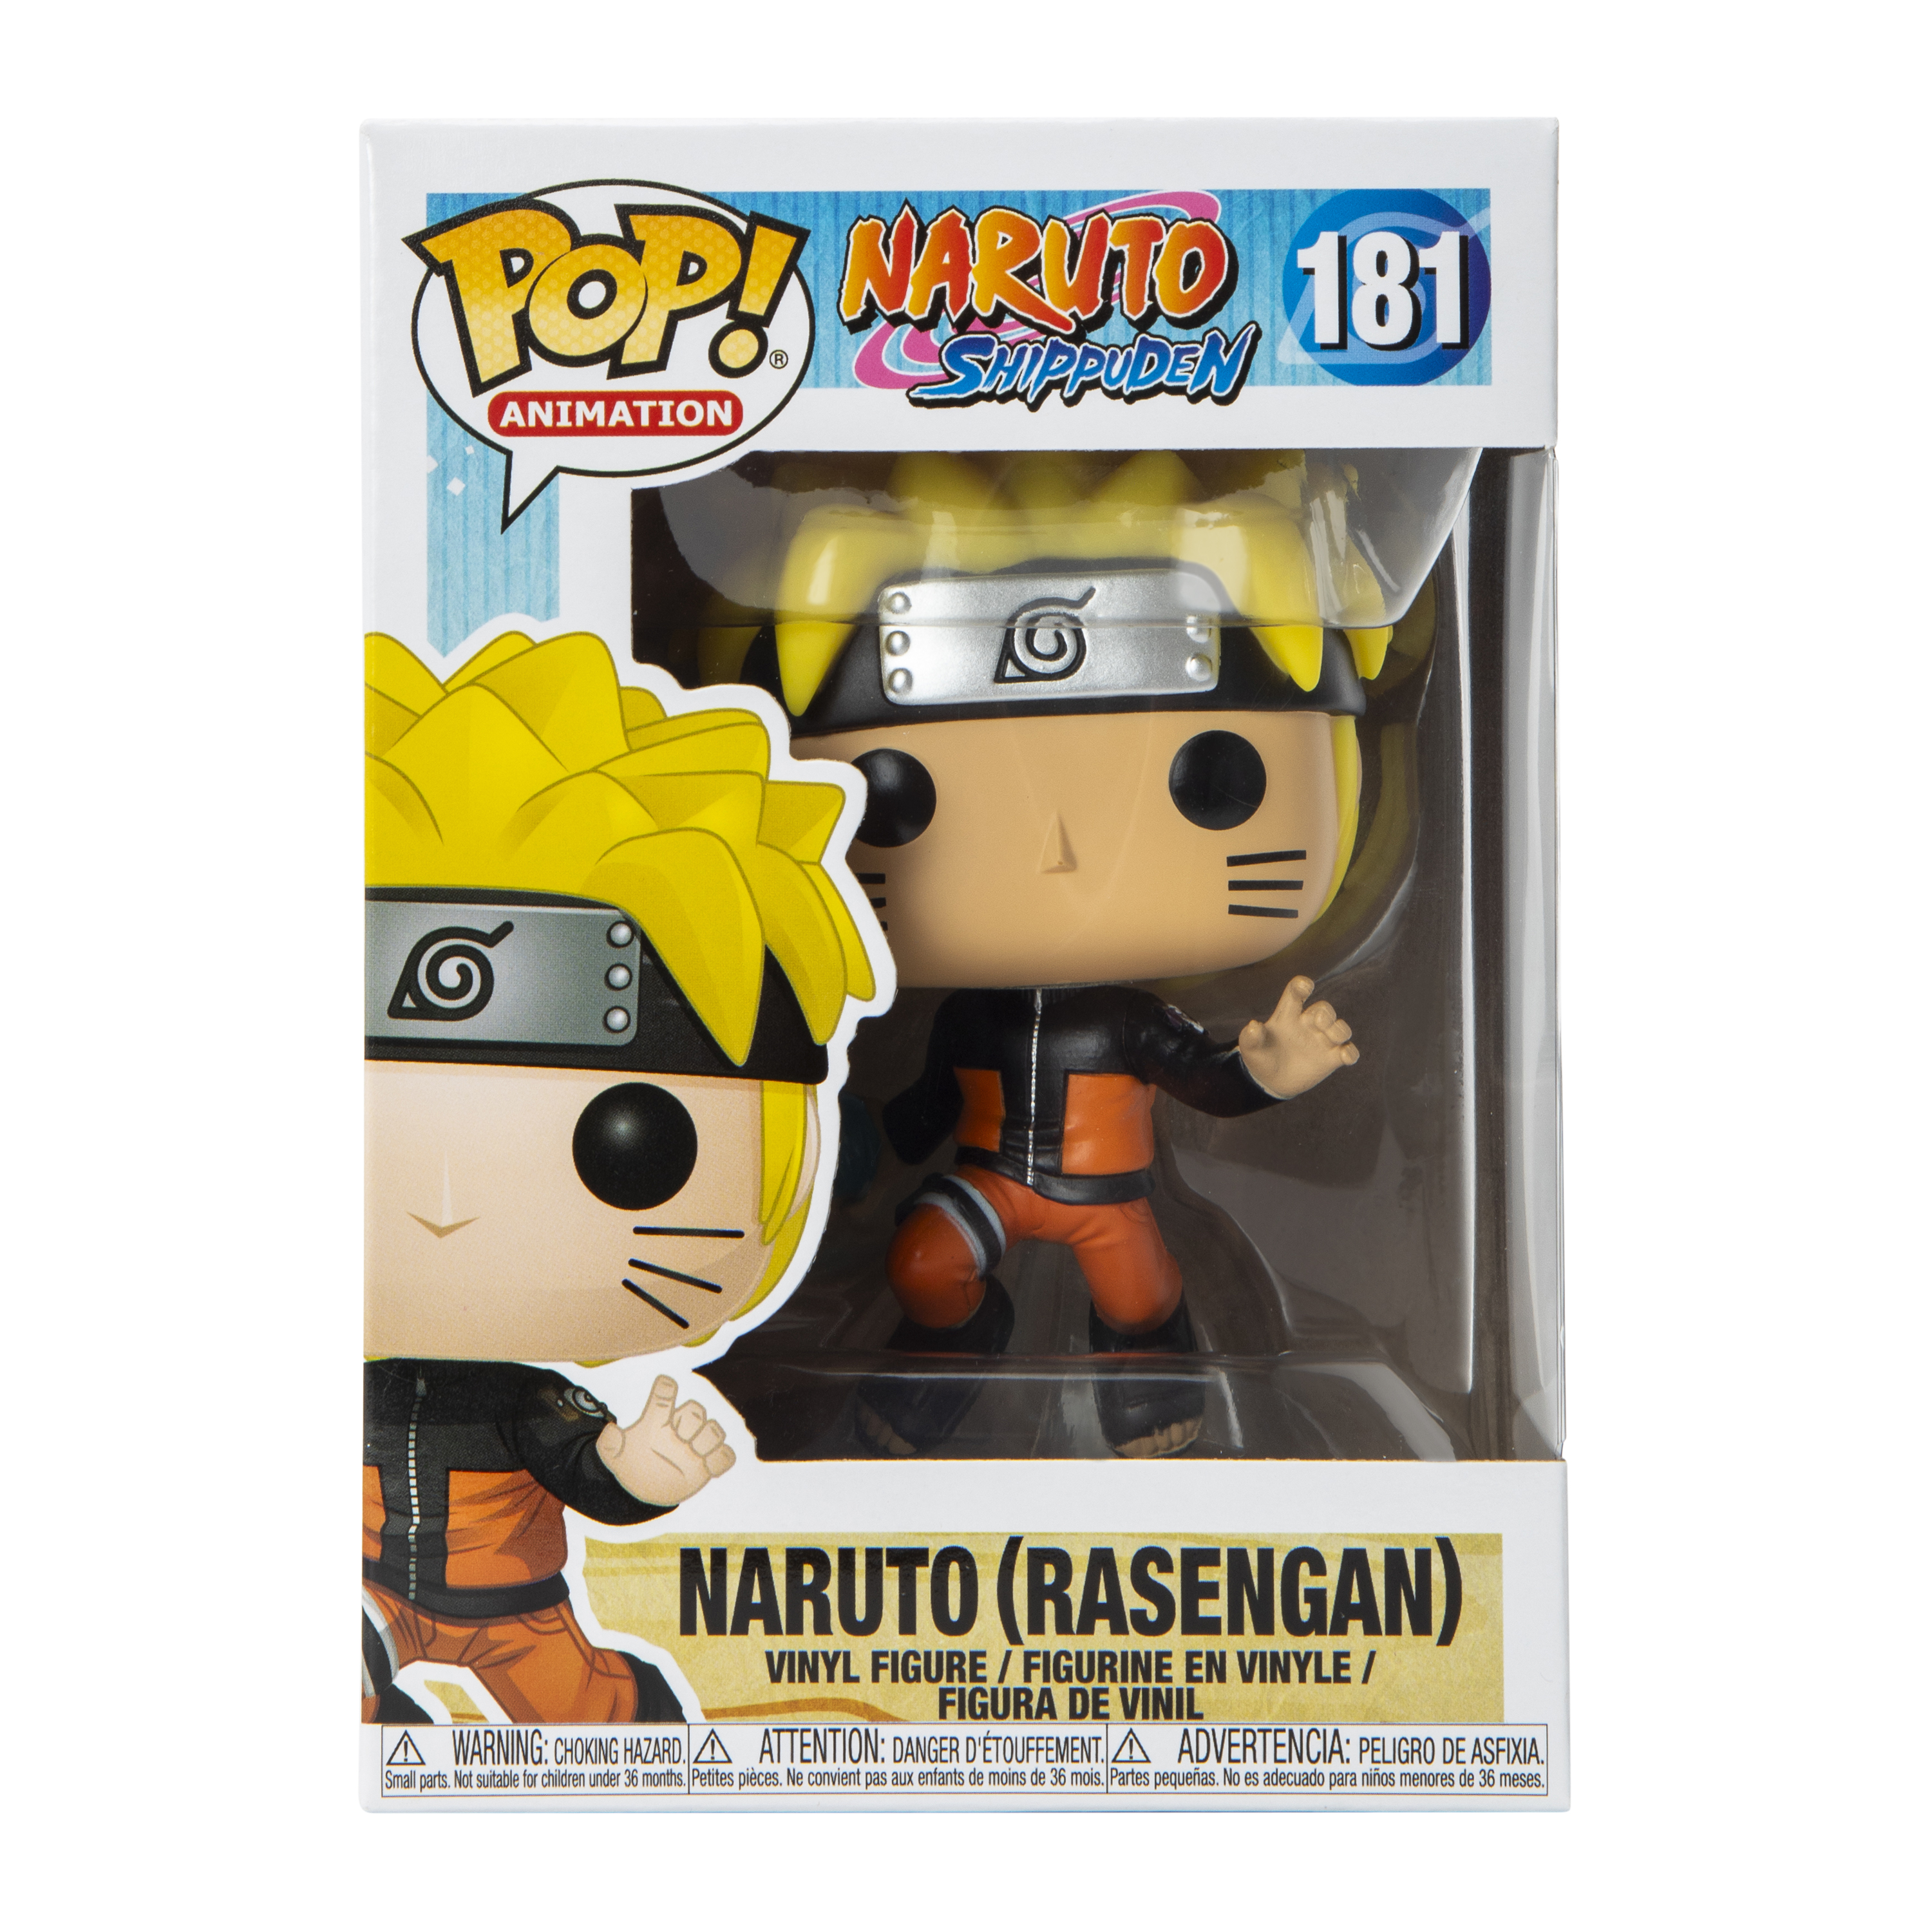 Funko Pop! Naruto Shippuden™ Naruto (Rasengan) Vinyl Figure